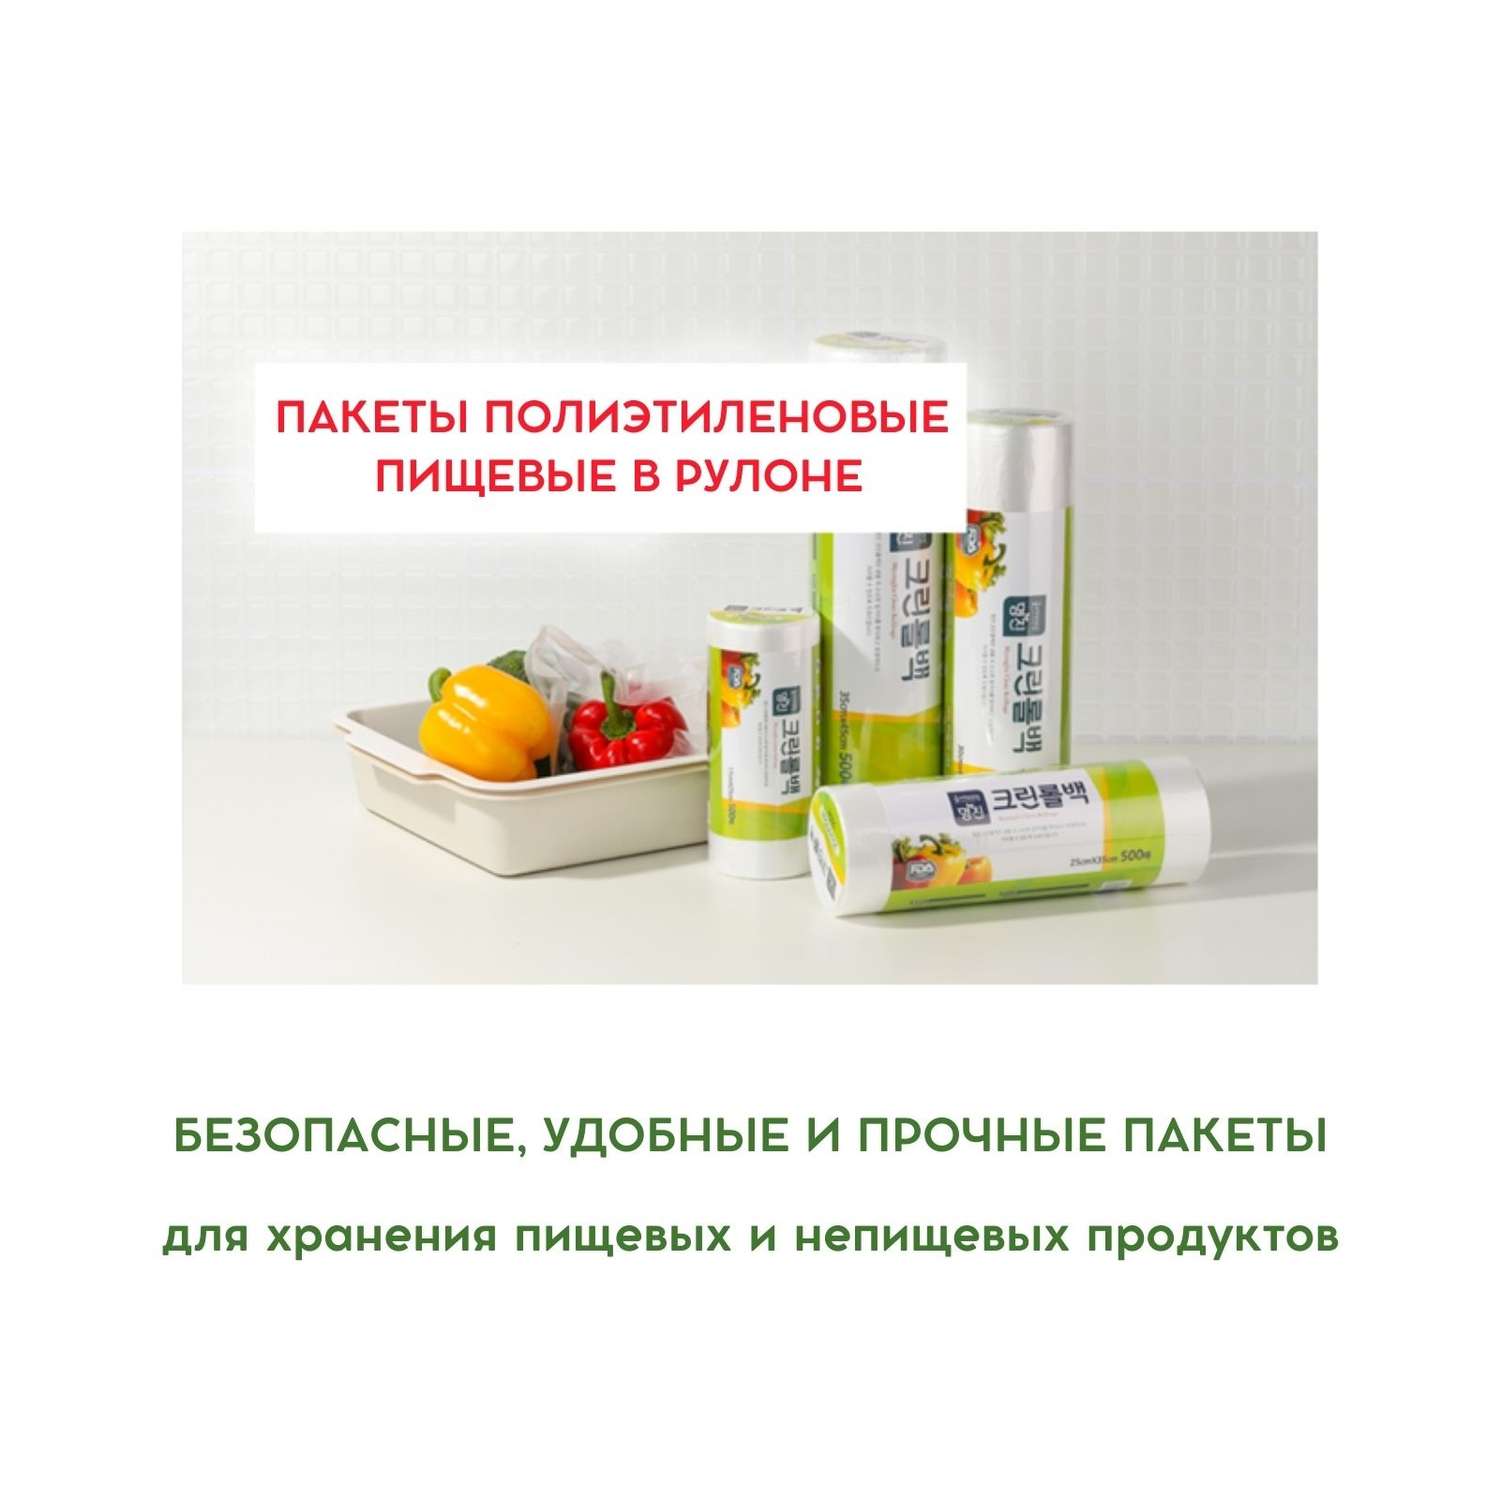 Пакеты полиэтиленовые пищевые HOME EDITION MYUNGJIN в рулоне 17х25 см 500 шт - фото 3